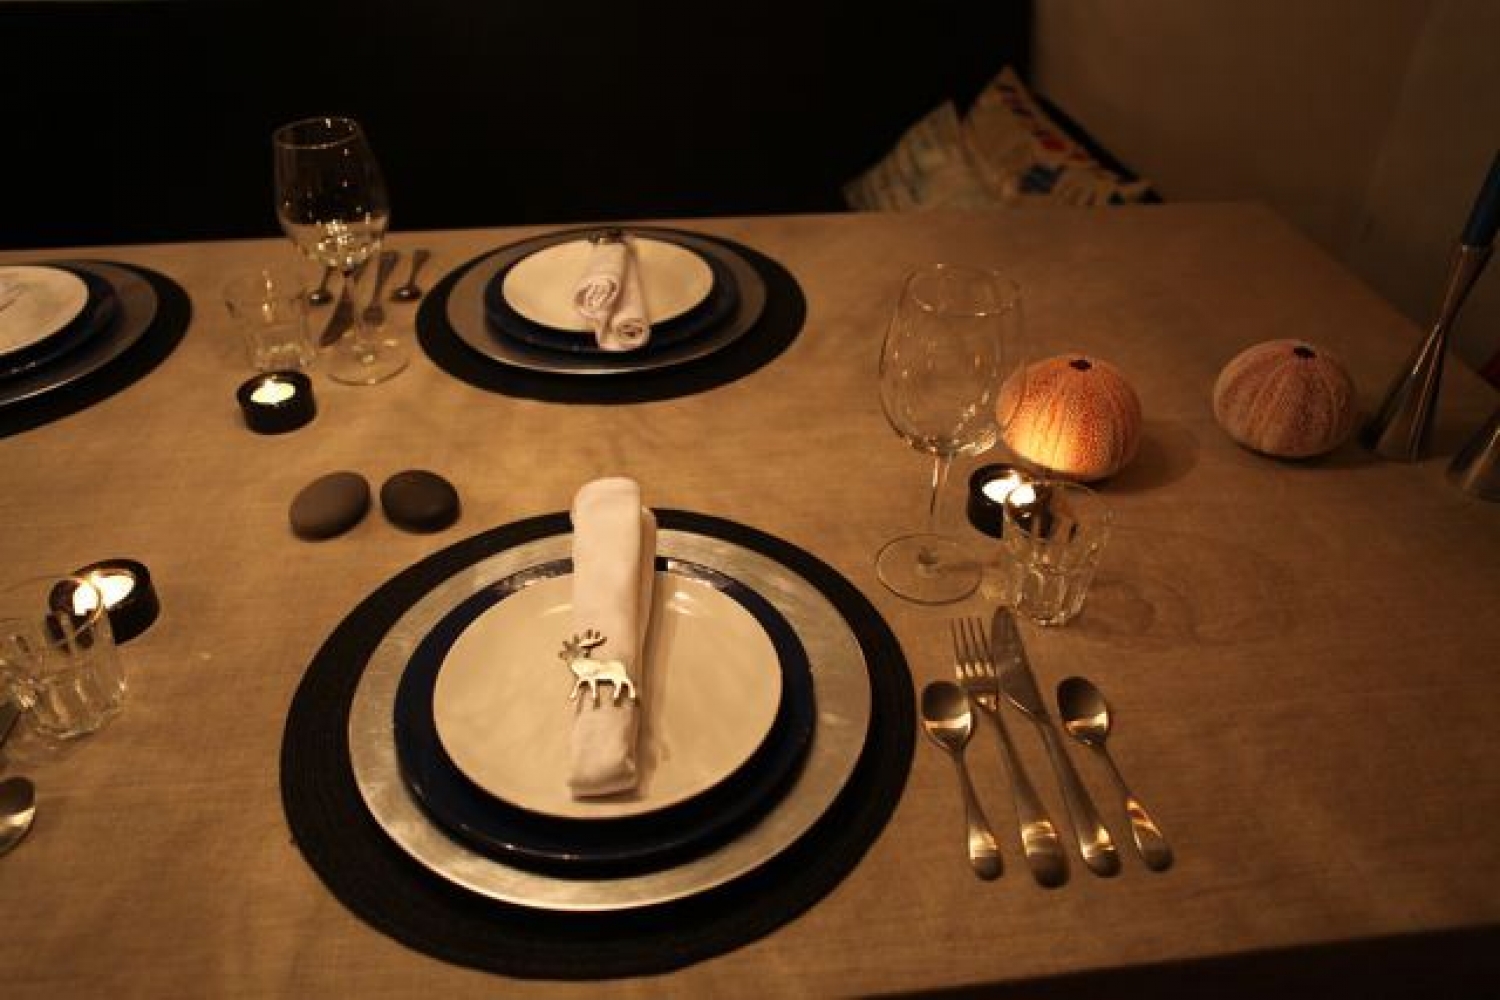 Table set for dinner